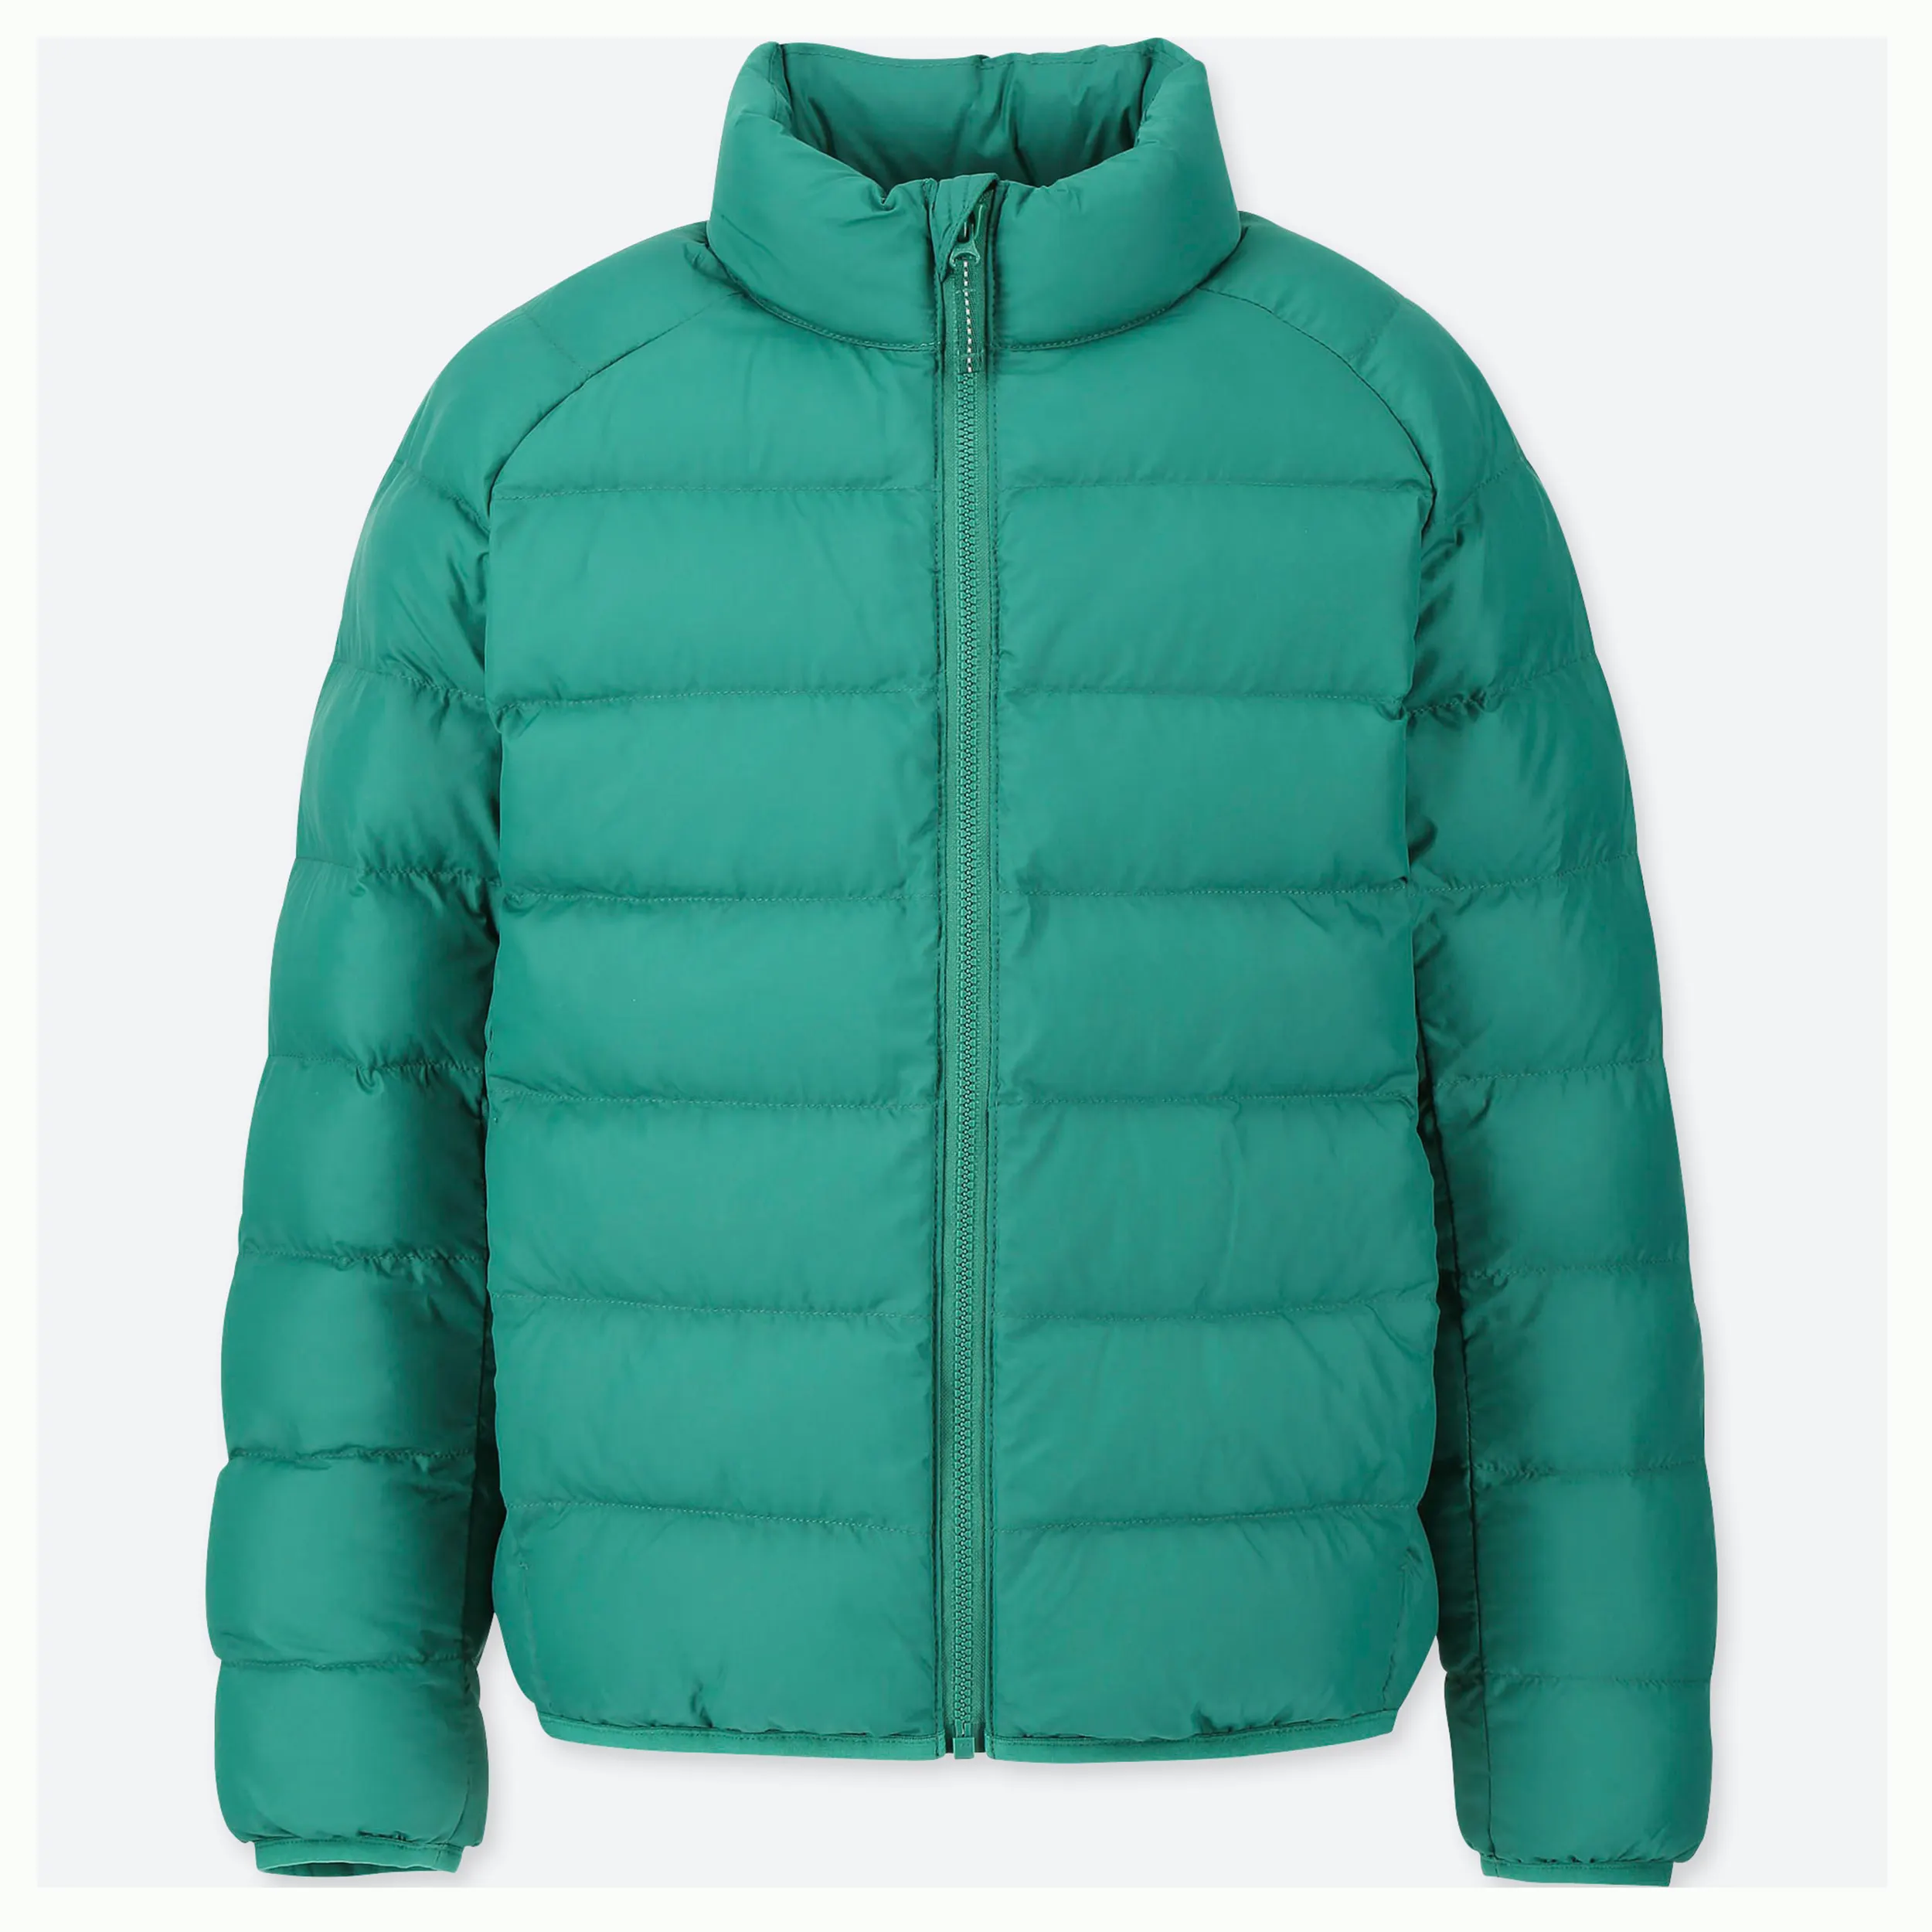 편안한 다운 재킷 소년 따뜻한 자켓 호흡기 겨울 코튼 후드 코트 지퍼 겉옷 파란색과 검은 색 호흡기 자켓 남성용